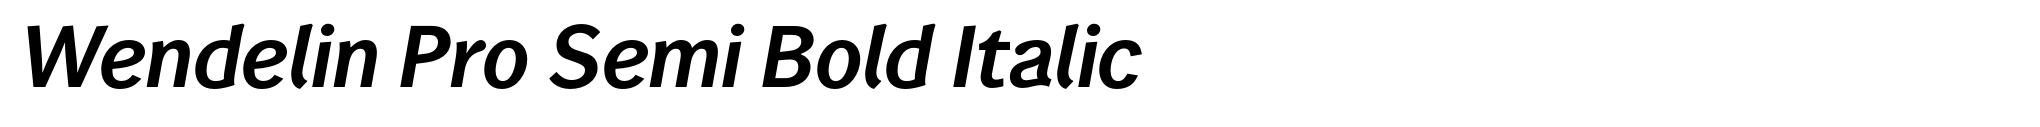 Wendelin Pro Semi Bold Italic image